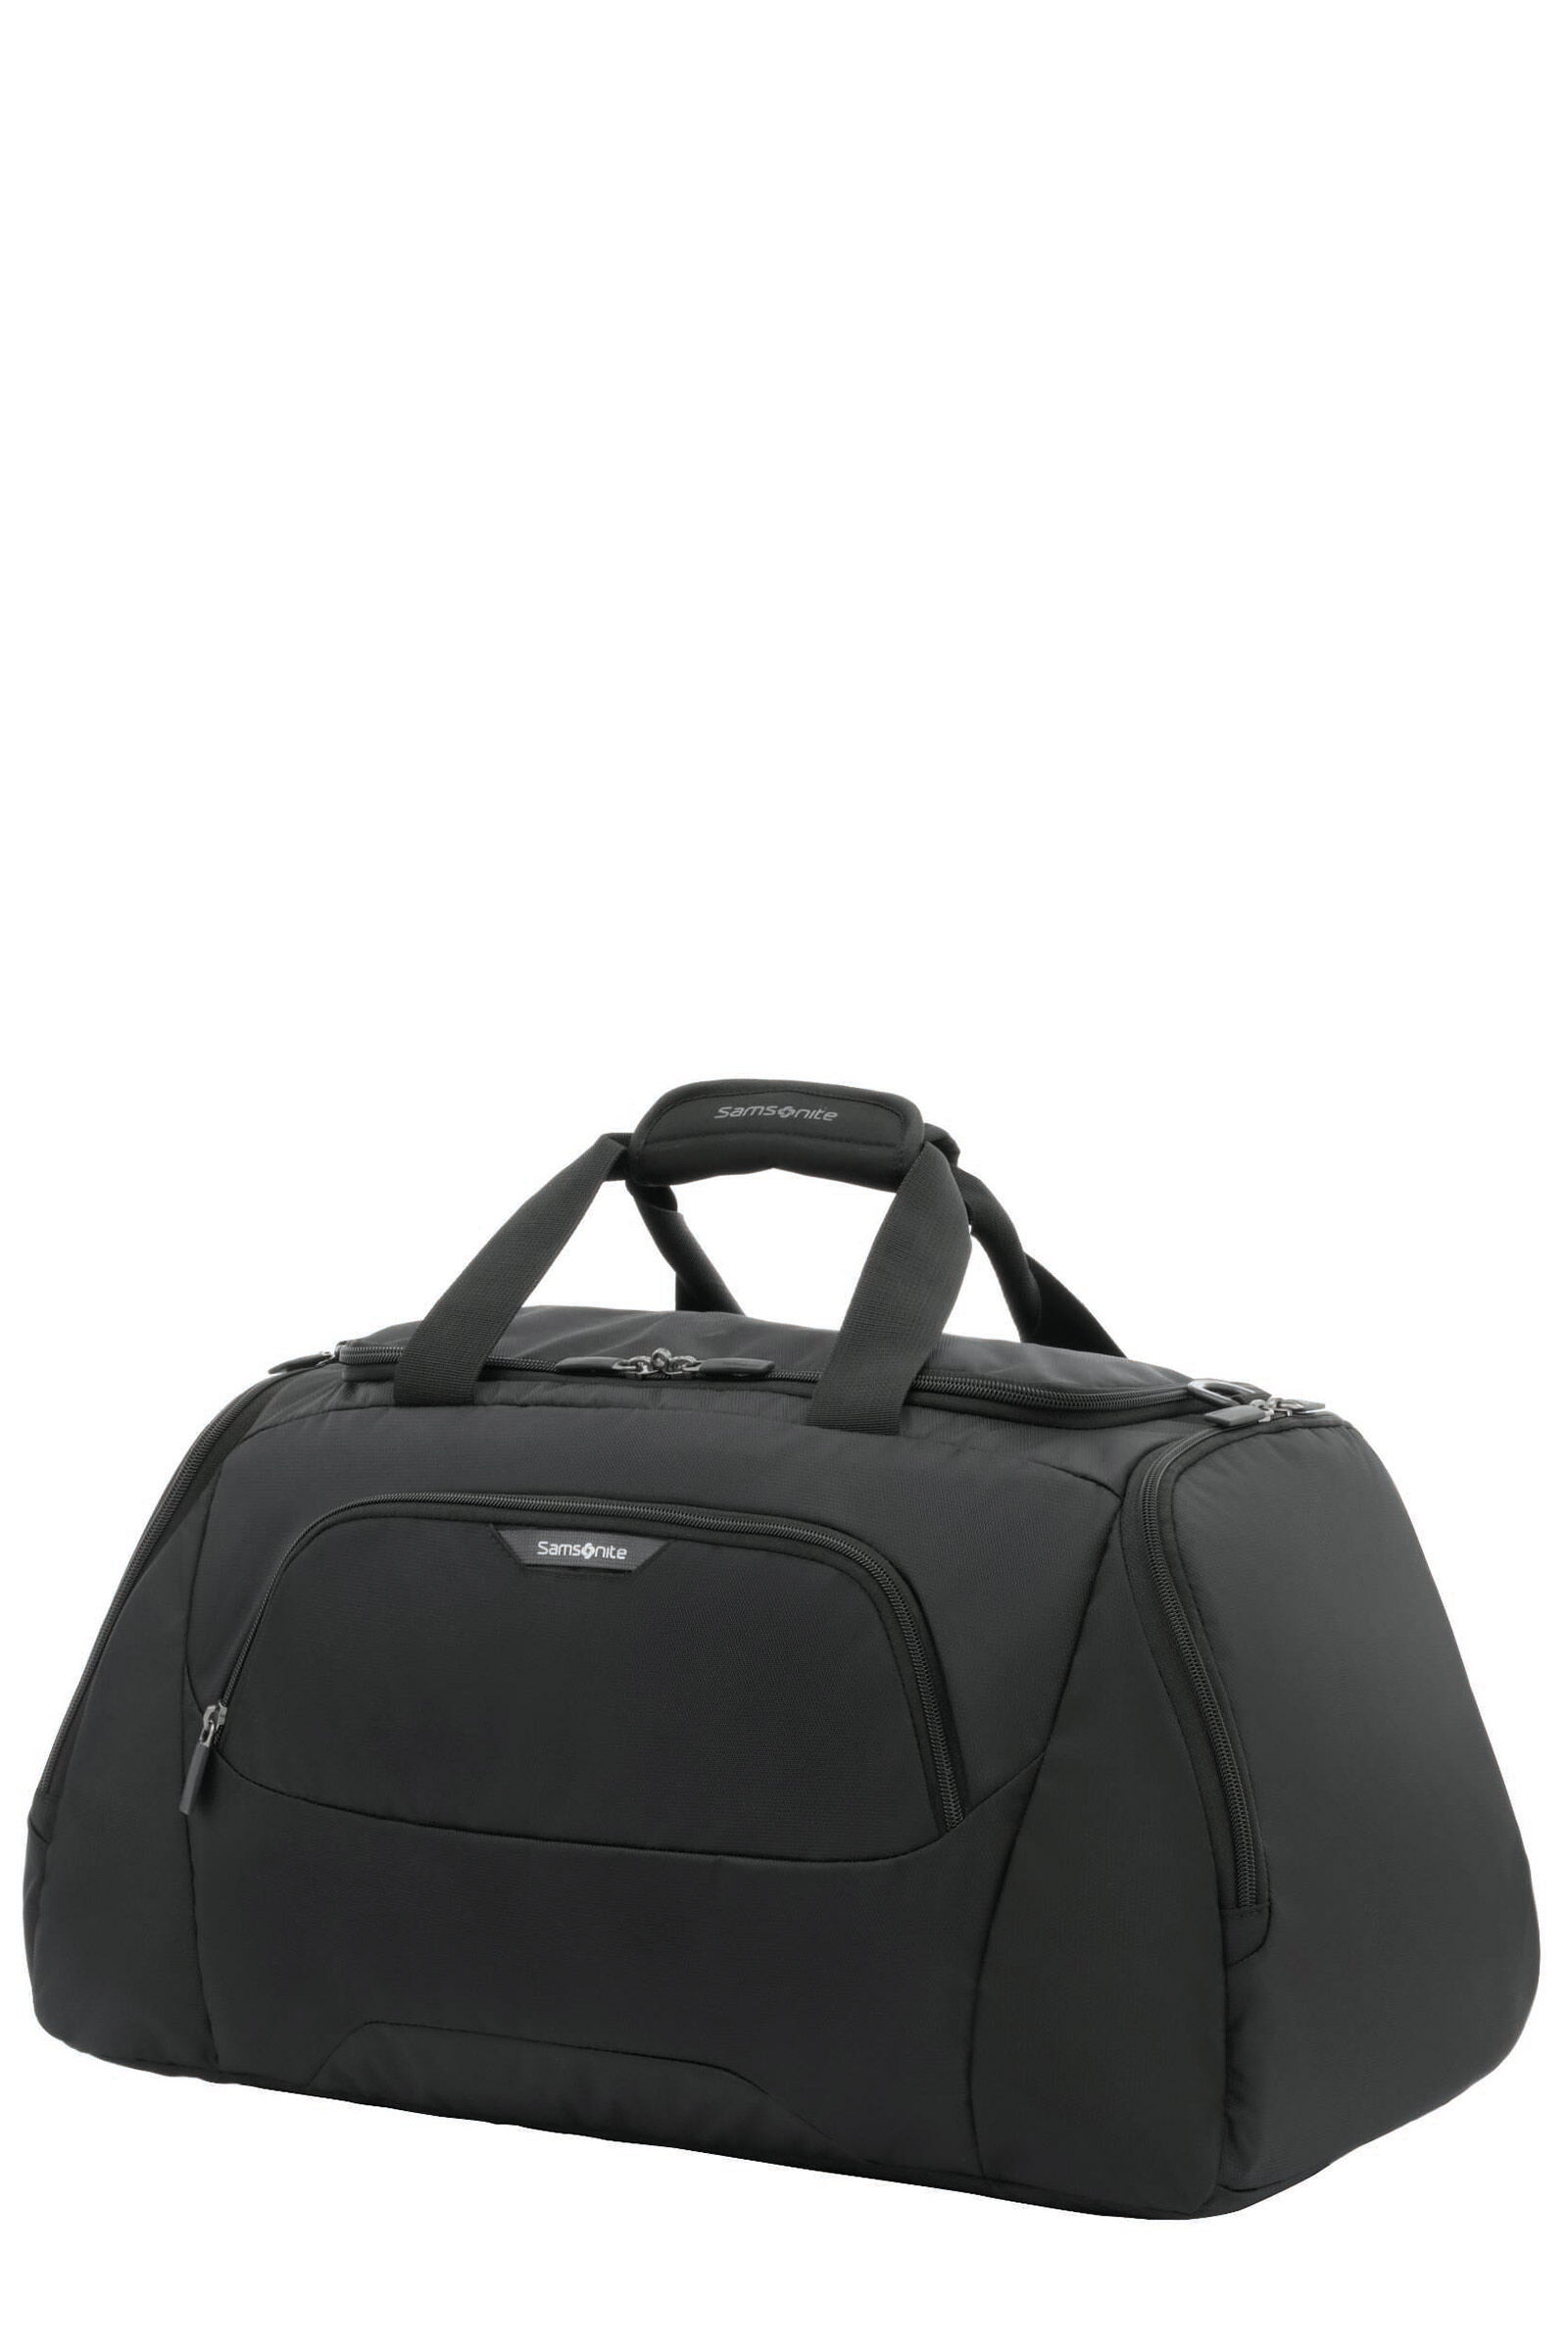 Roader Duffle Bag S | Samsonite UK